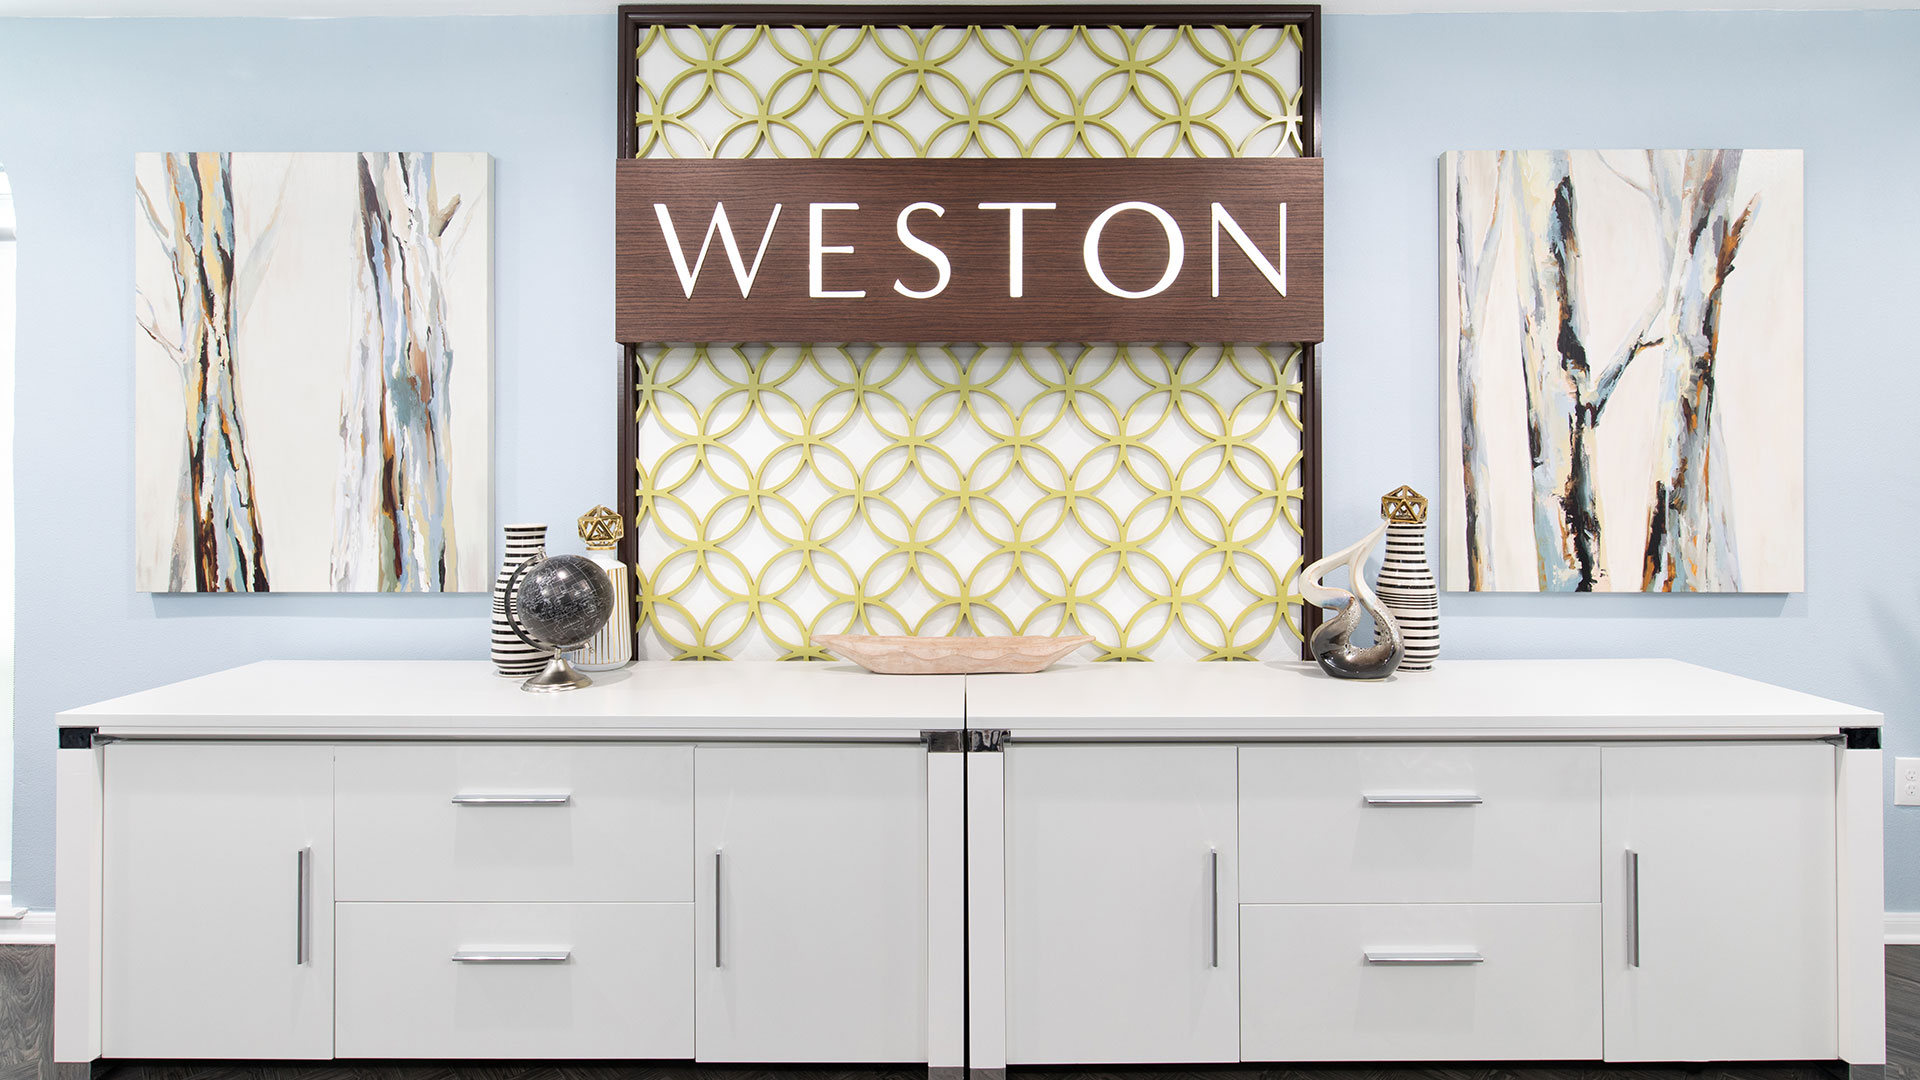 The Weston Apartments Houston TX 2019 25